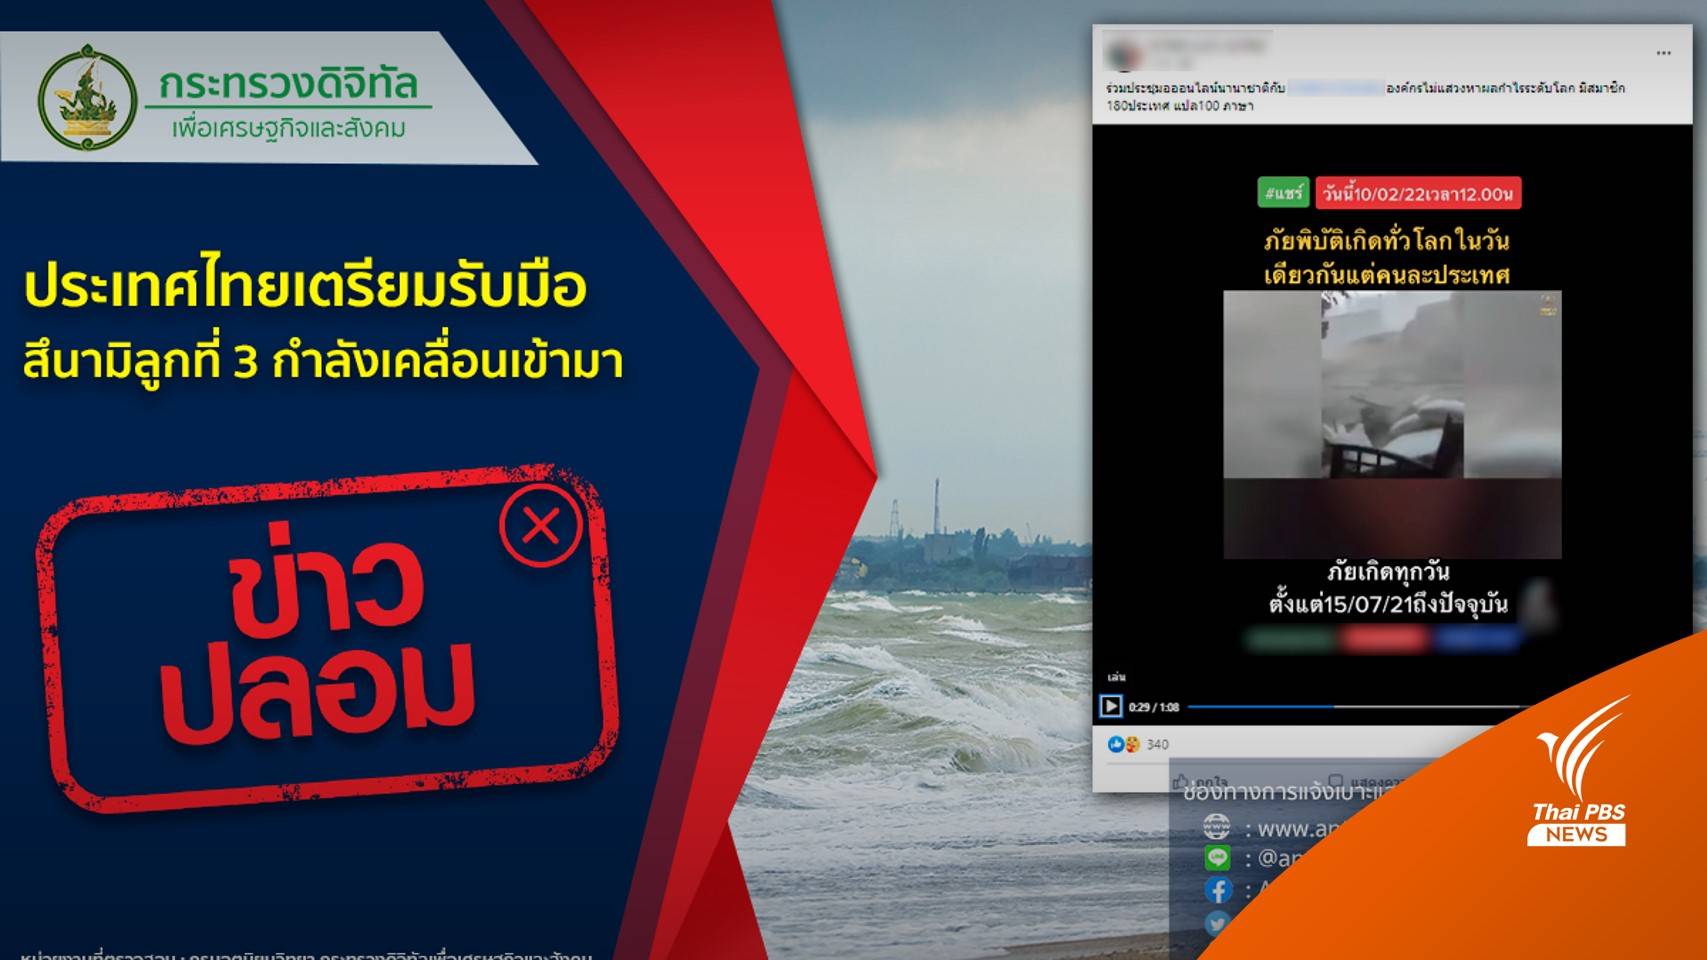 อย่าแชร์! ข่าว "สึนามิลูกที่ 3 เข้าไทย" ไม่ใช่ข่าวจริง